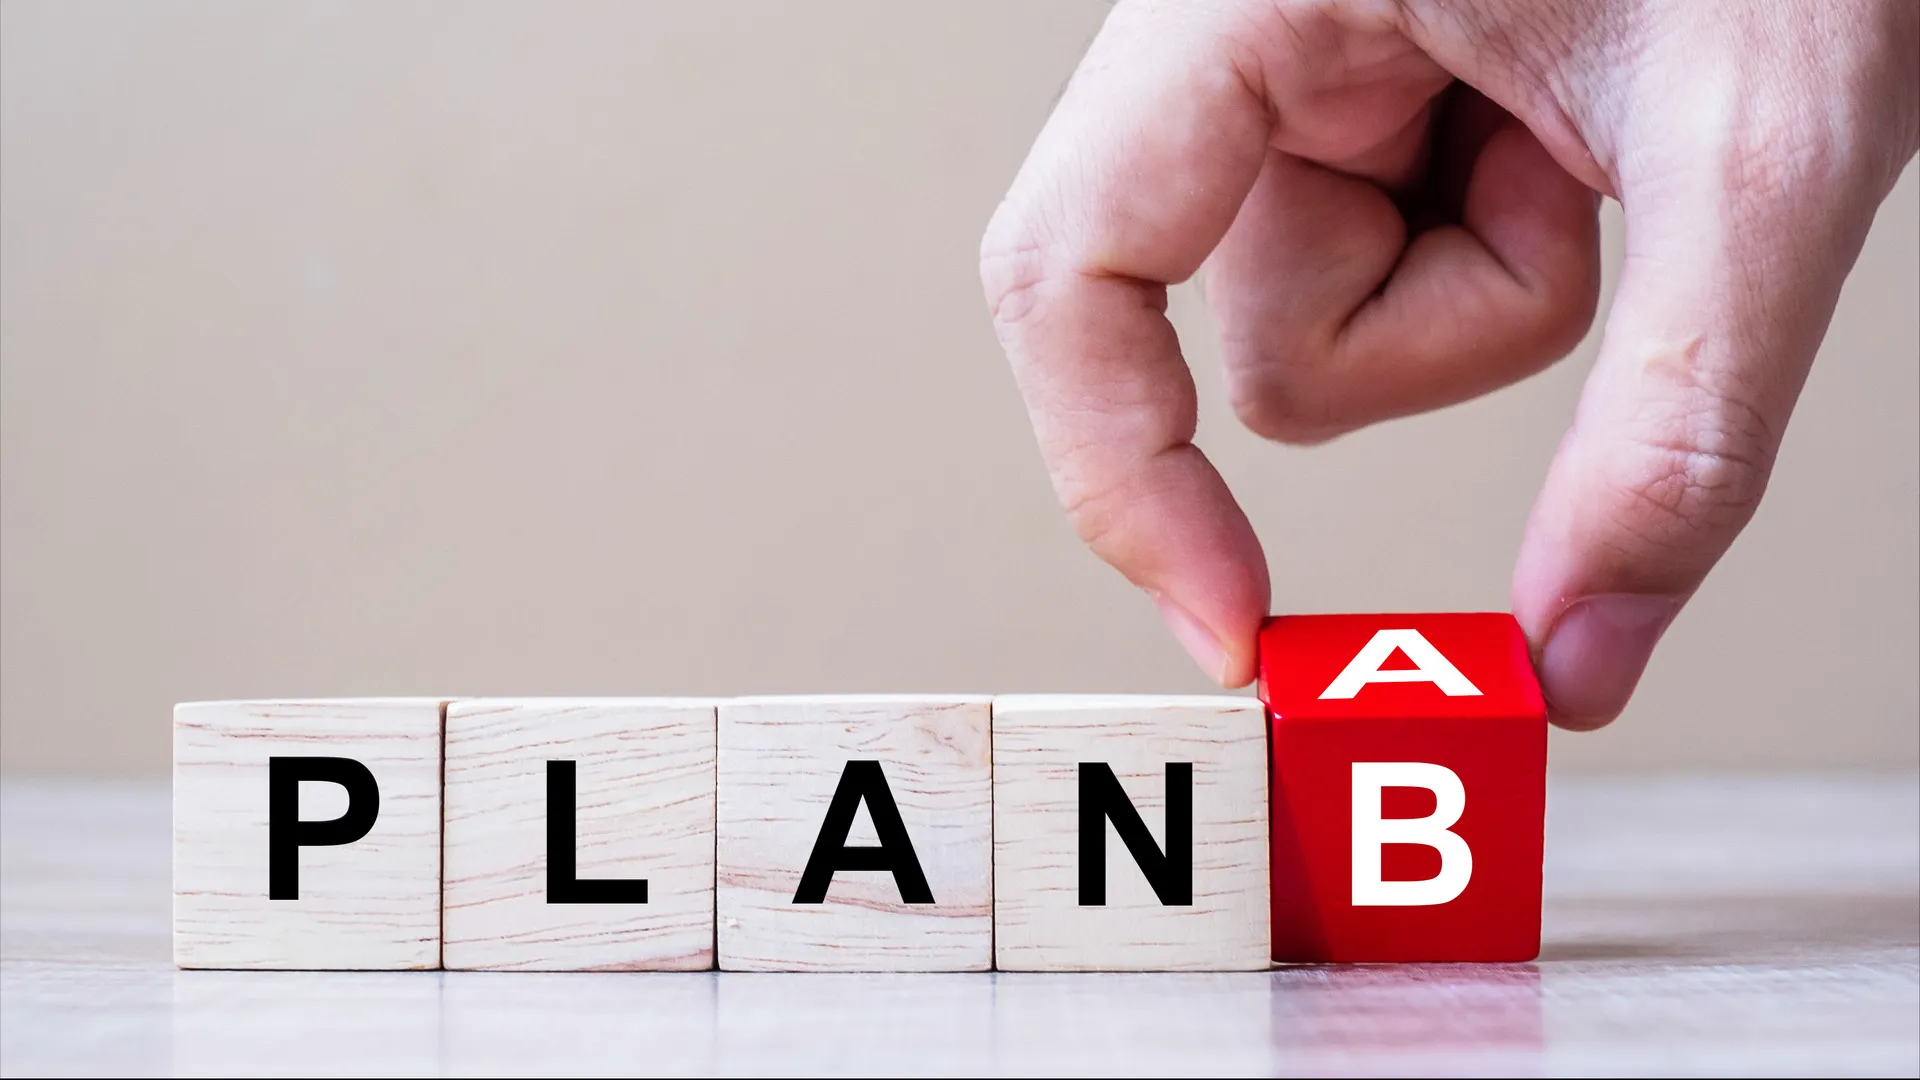 Η λέξη "PLAN" γραμμένη με γράμματα πάνω σε μικρούς ξύλινους κύβους. Ένα χέρι τοποθετεί το γράμμα "B"